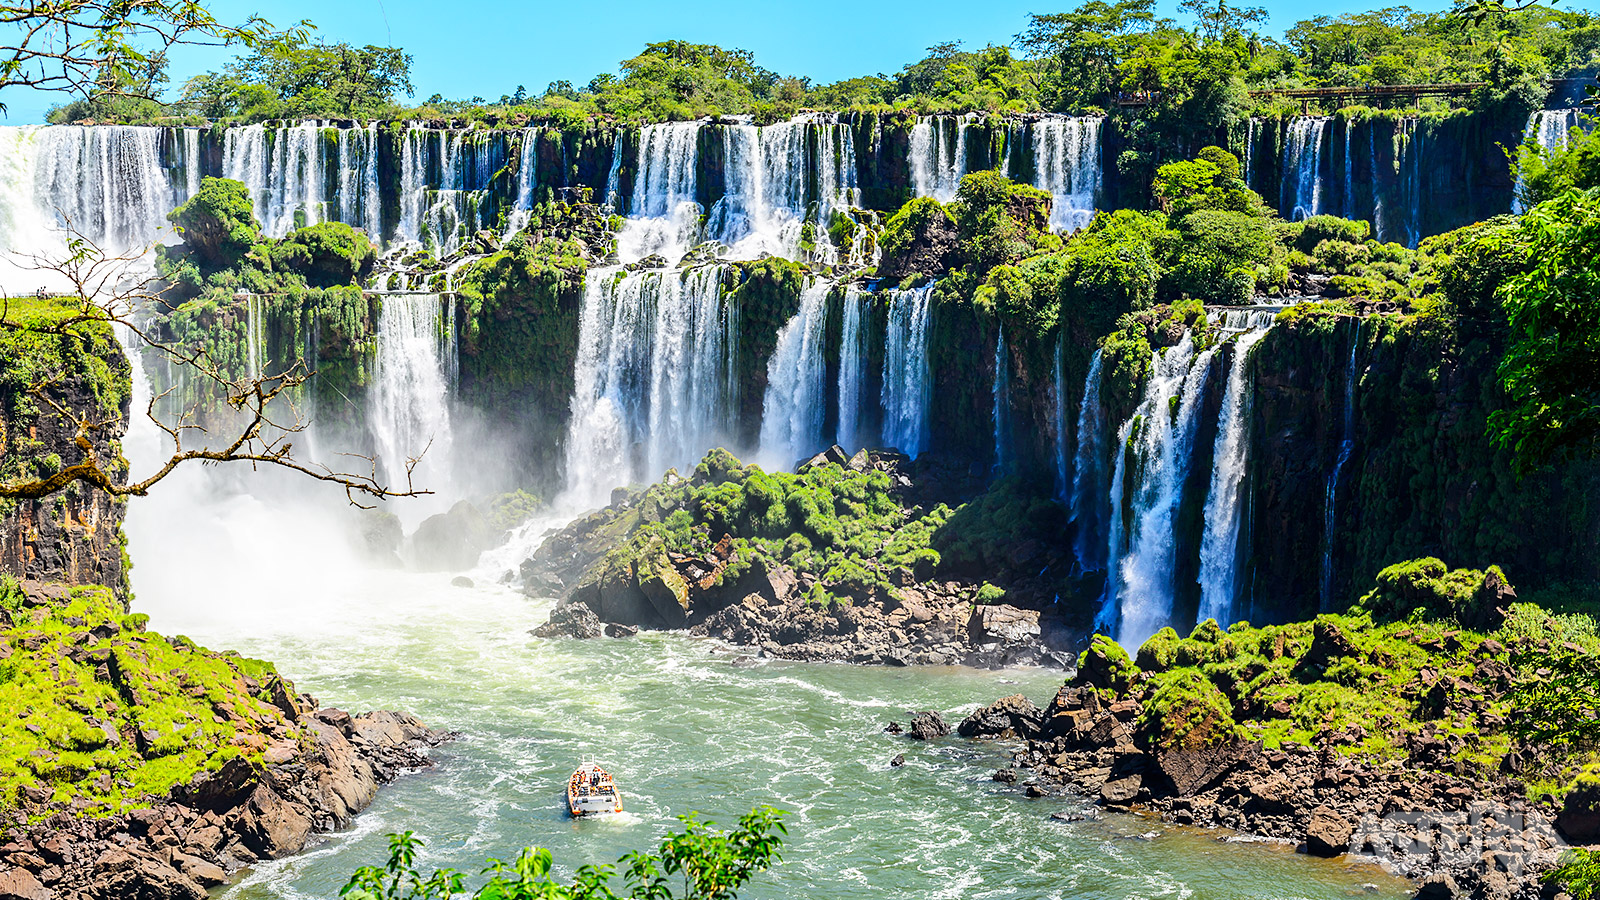 Je kan stoppen bij verschillende punten voor onvergetelijke uitzichten op de watervallen en de weelderige subtropische jungle